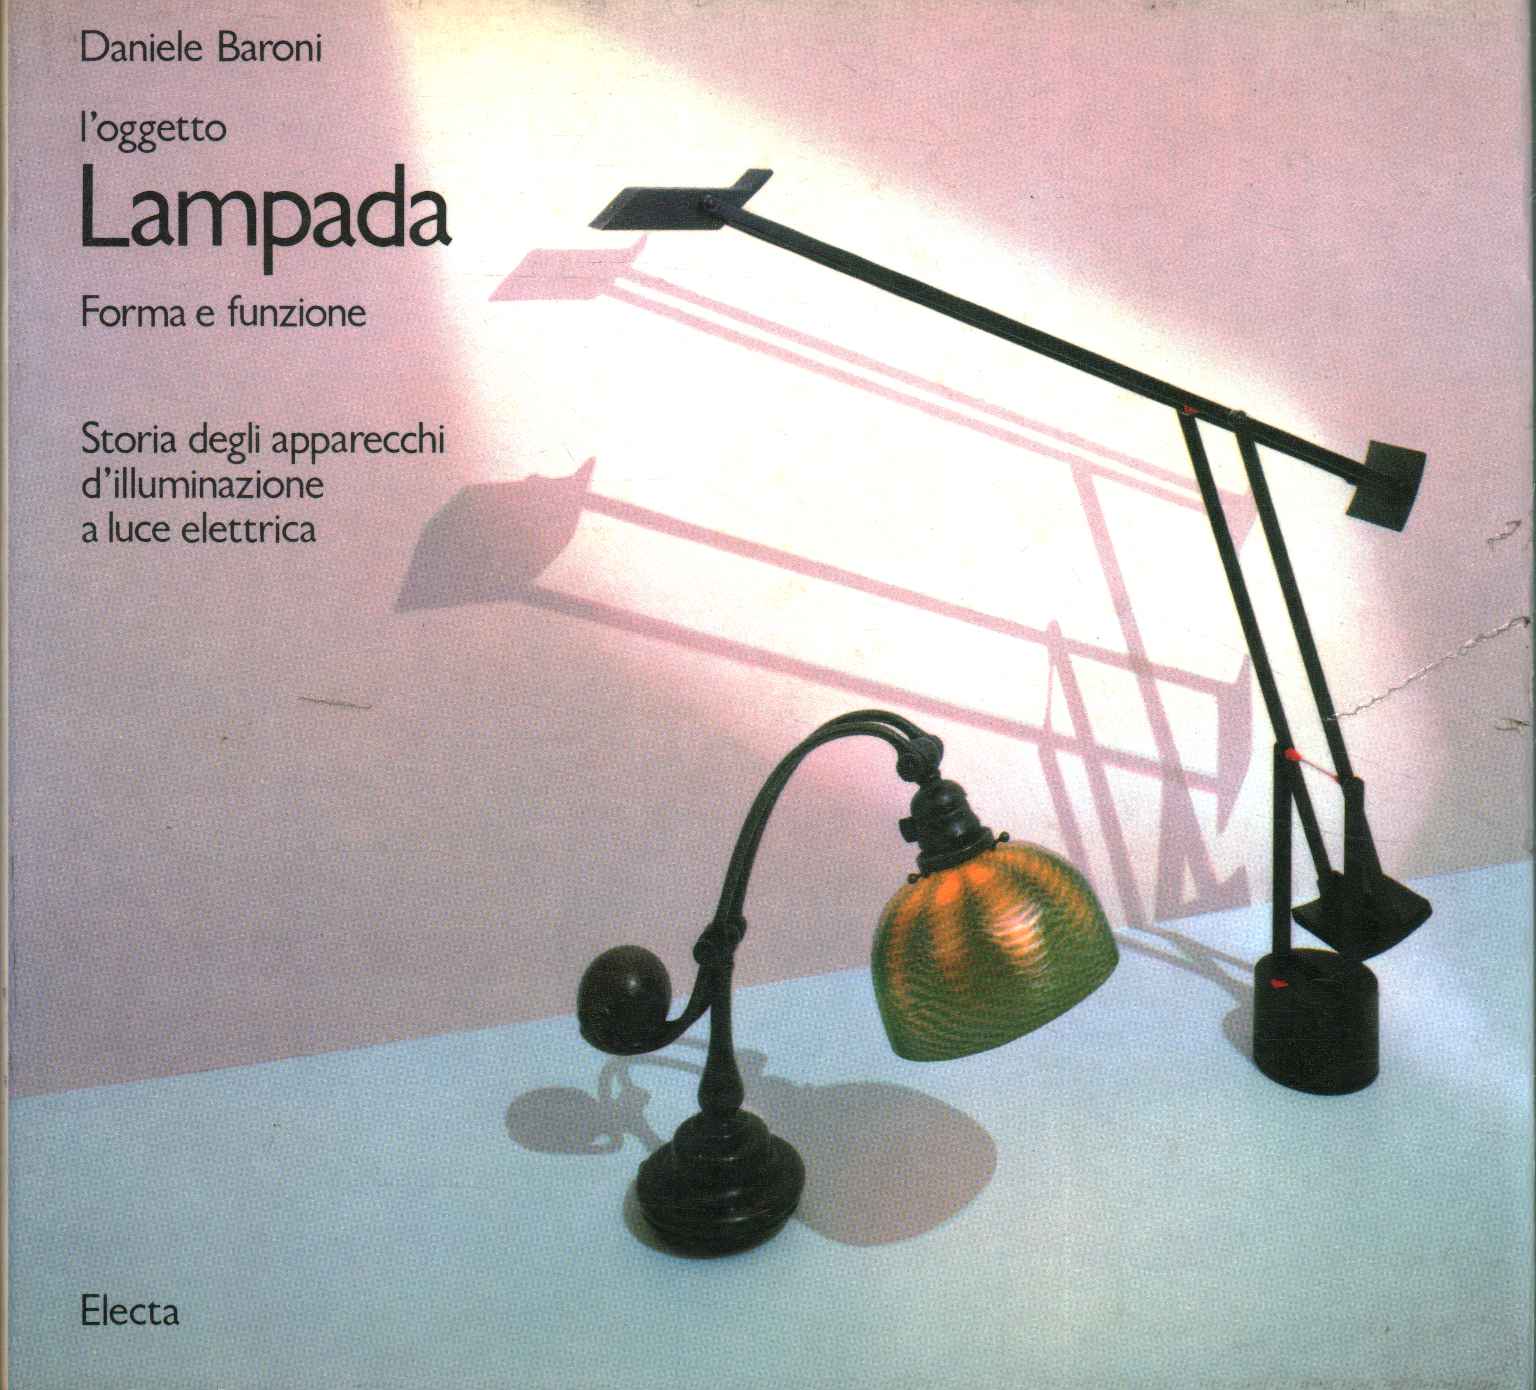 Lampada,L'oggetto lampada. Forma e funz